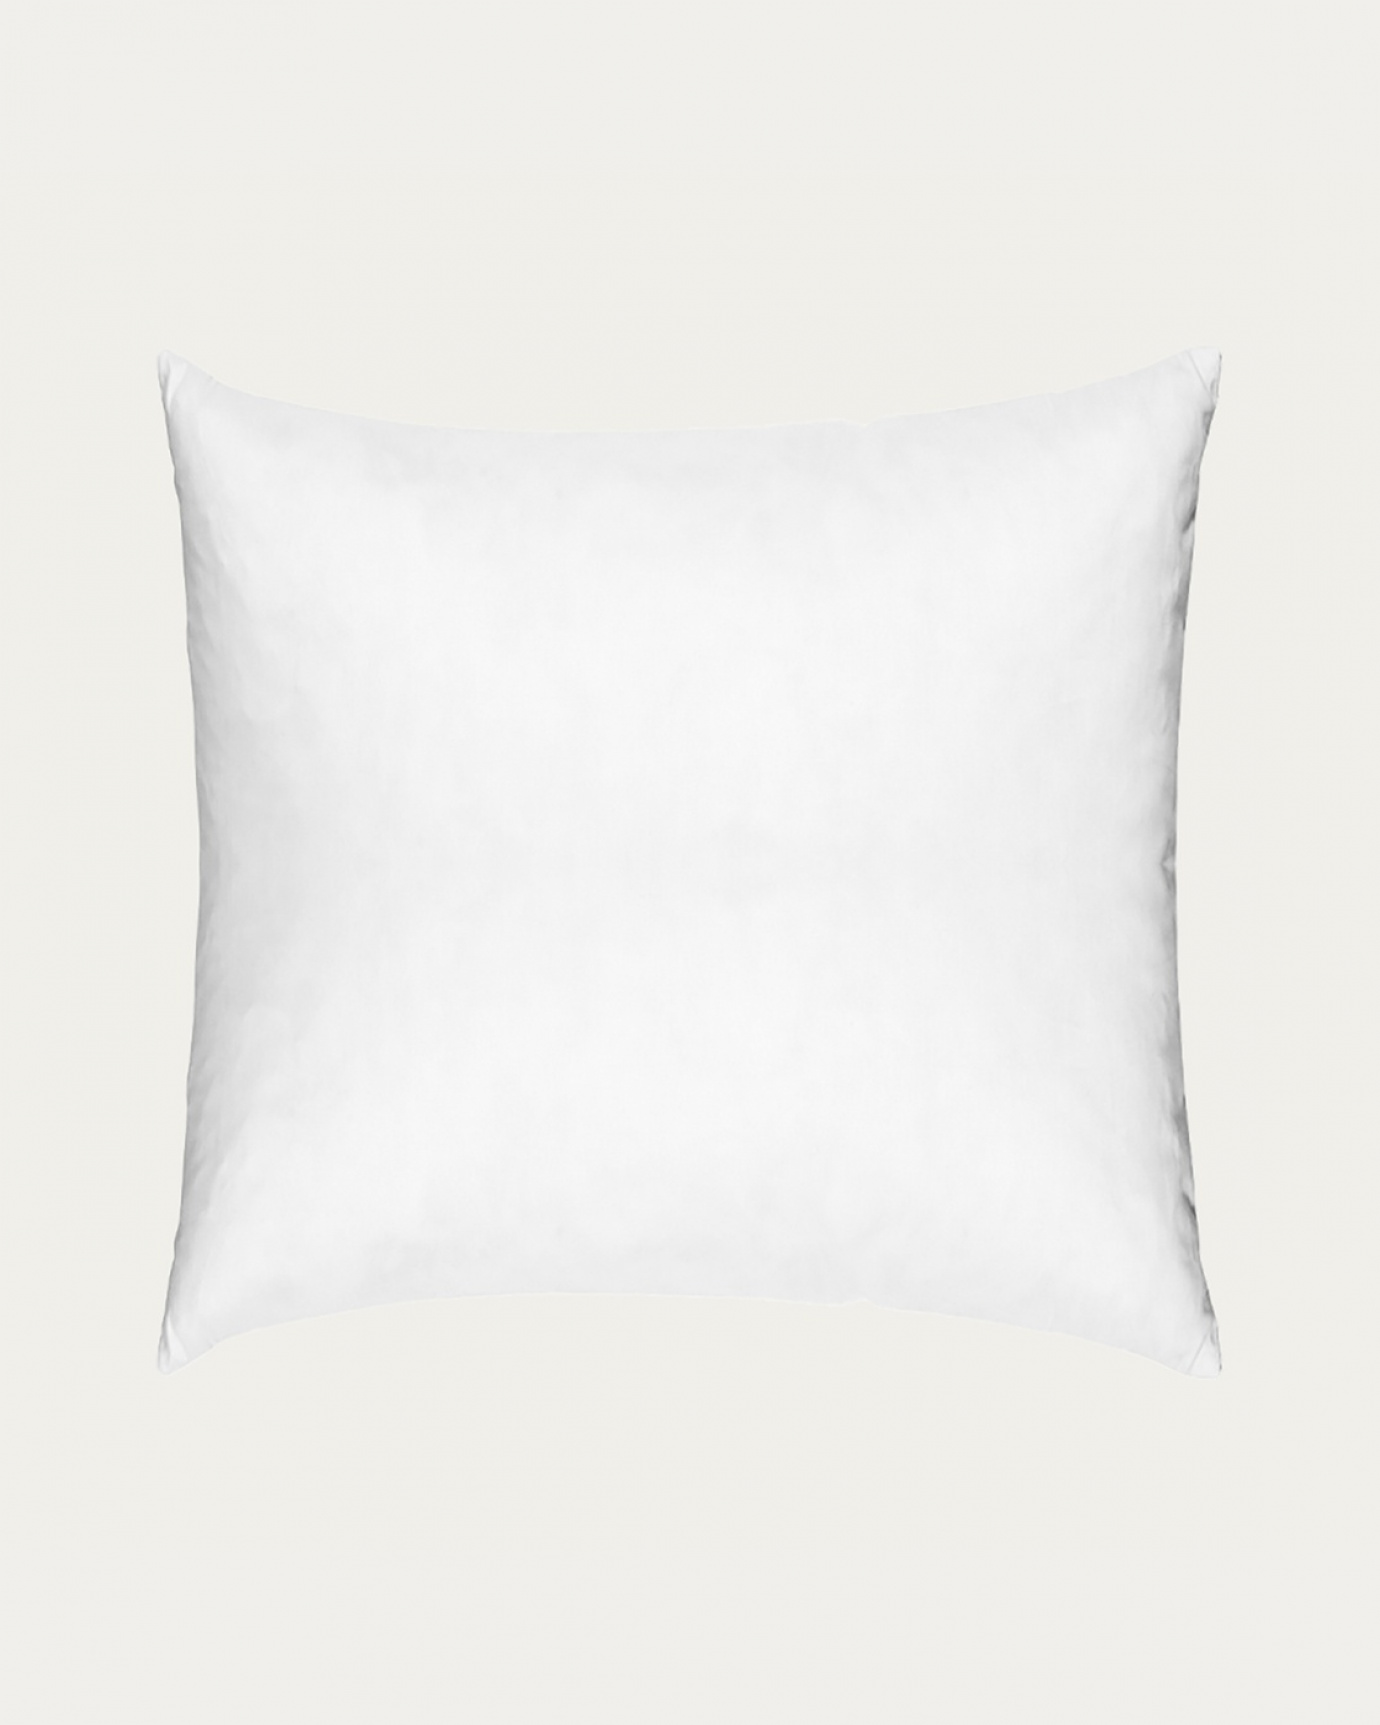 Immagine prodotto bianco SYNTHETIC cuscini interni in cotone con imbottitura in poliestere di LINUM DESIGN. Dimensioni 50x50 cm.